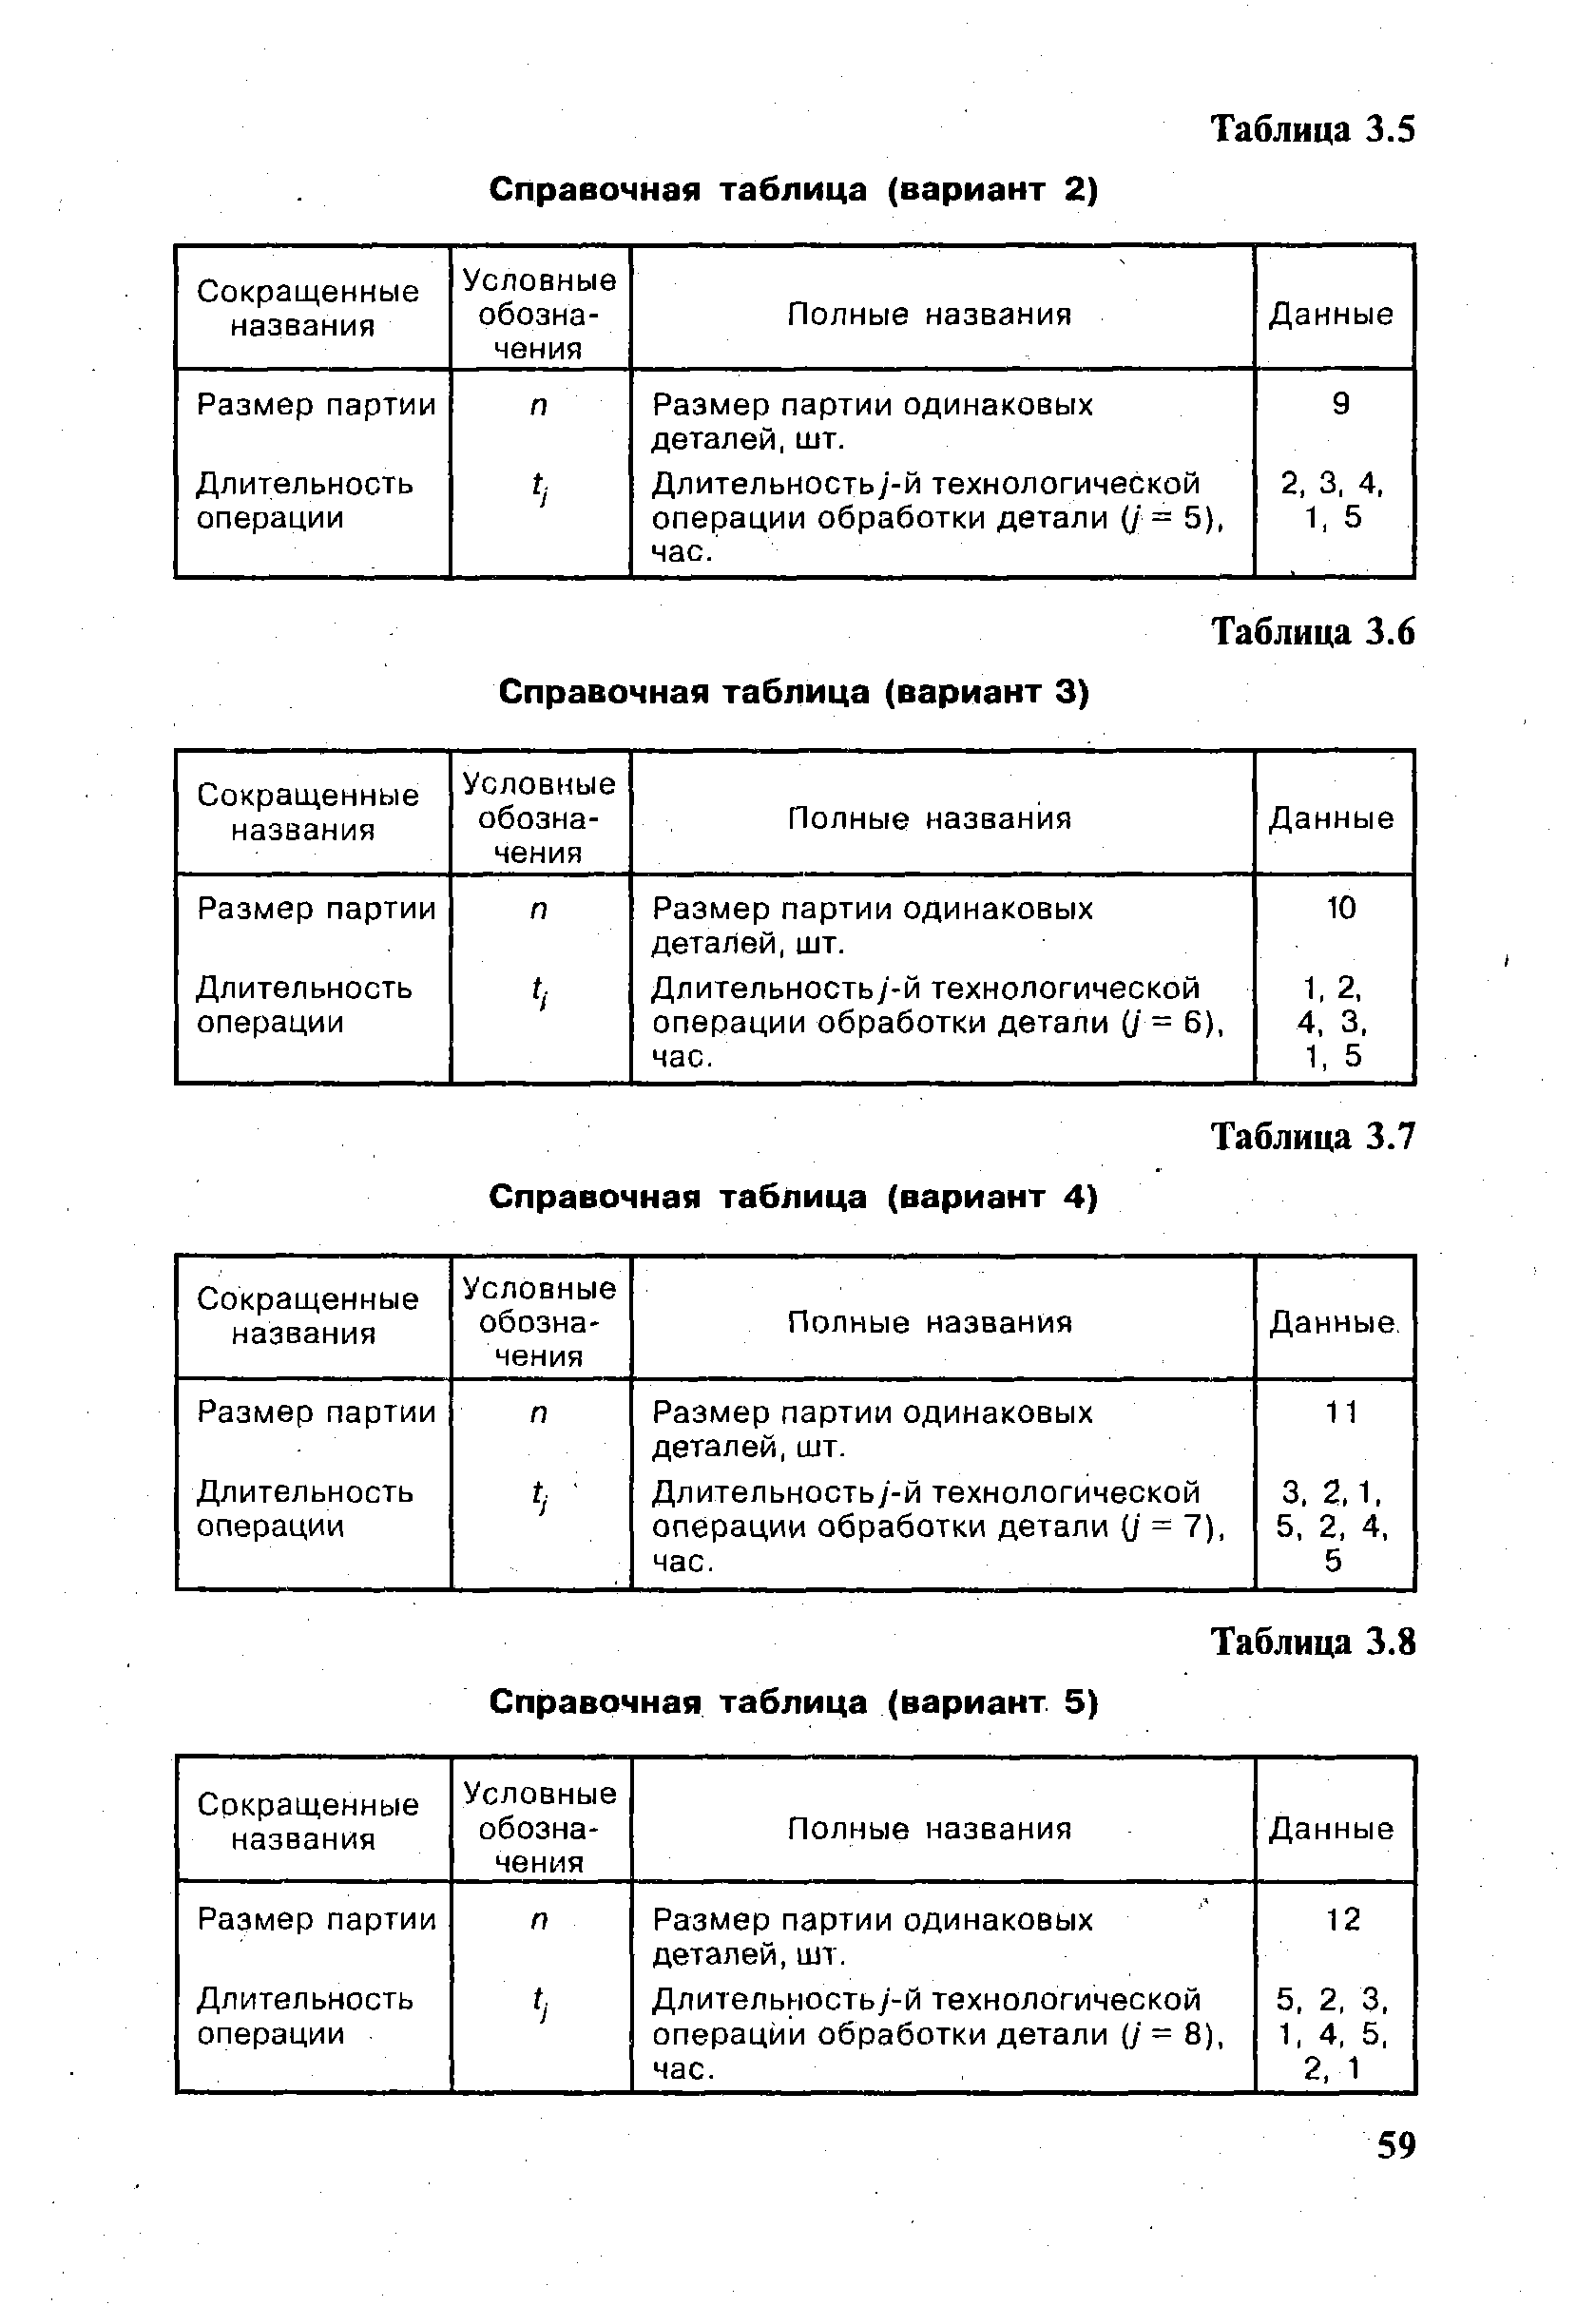 Таблица 3.7 Справочная таблица (вариант 4)
